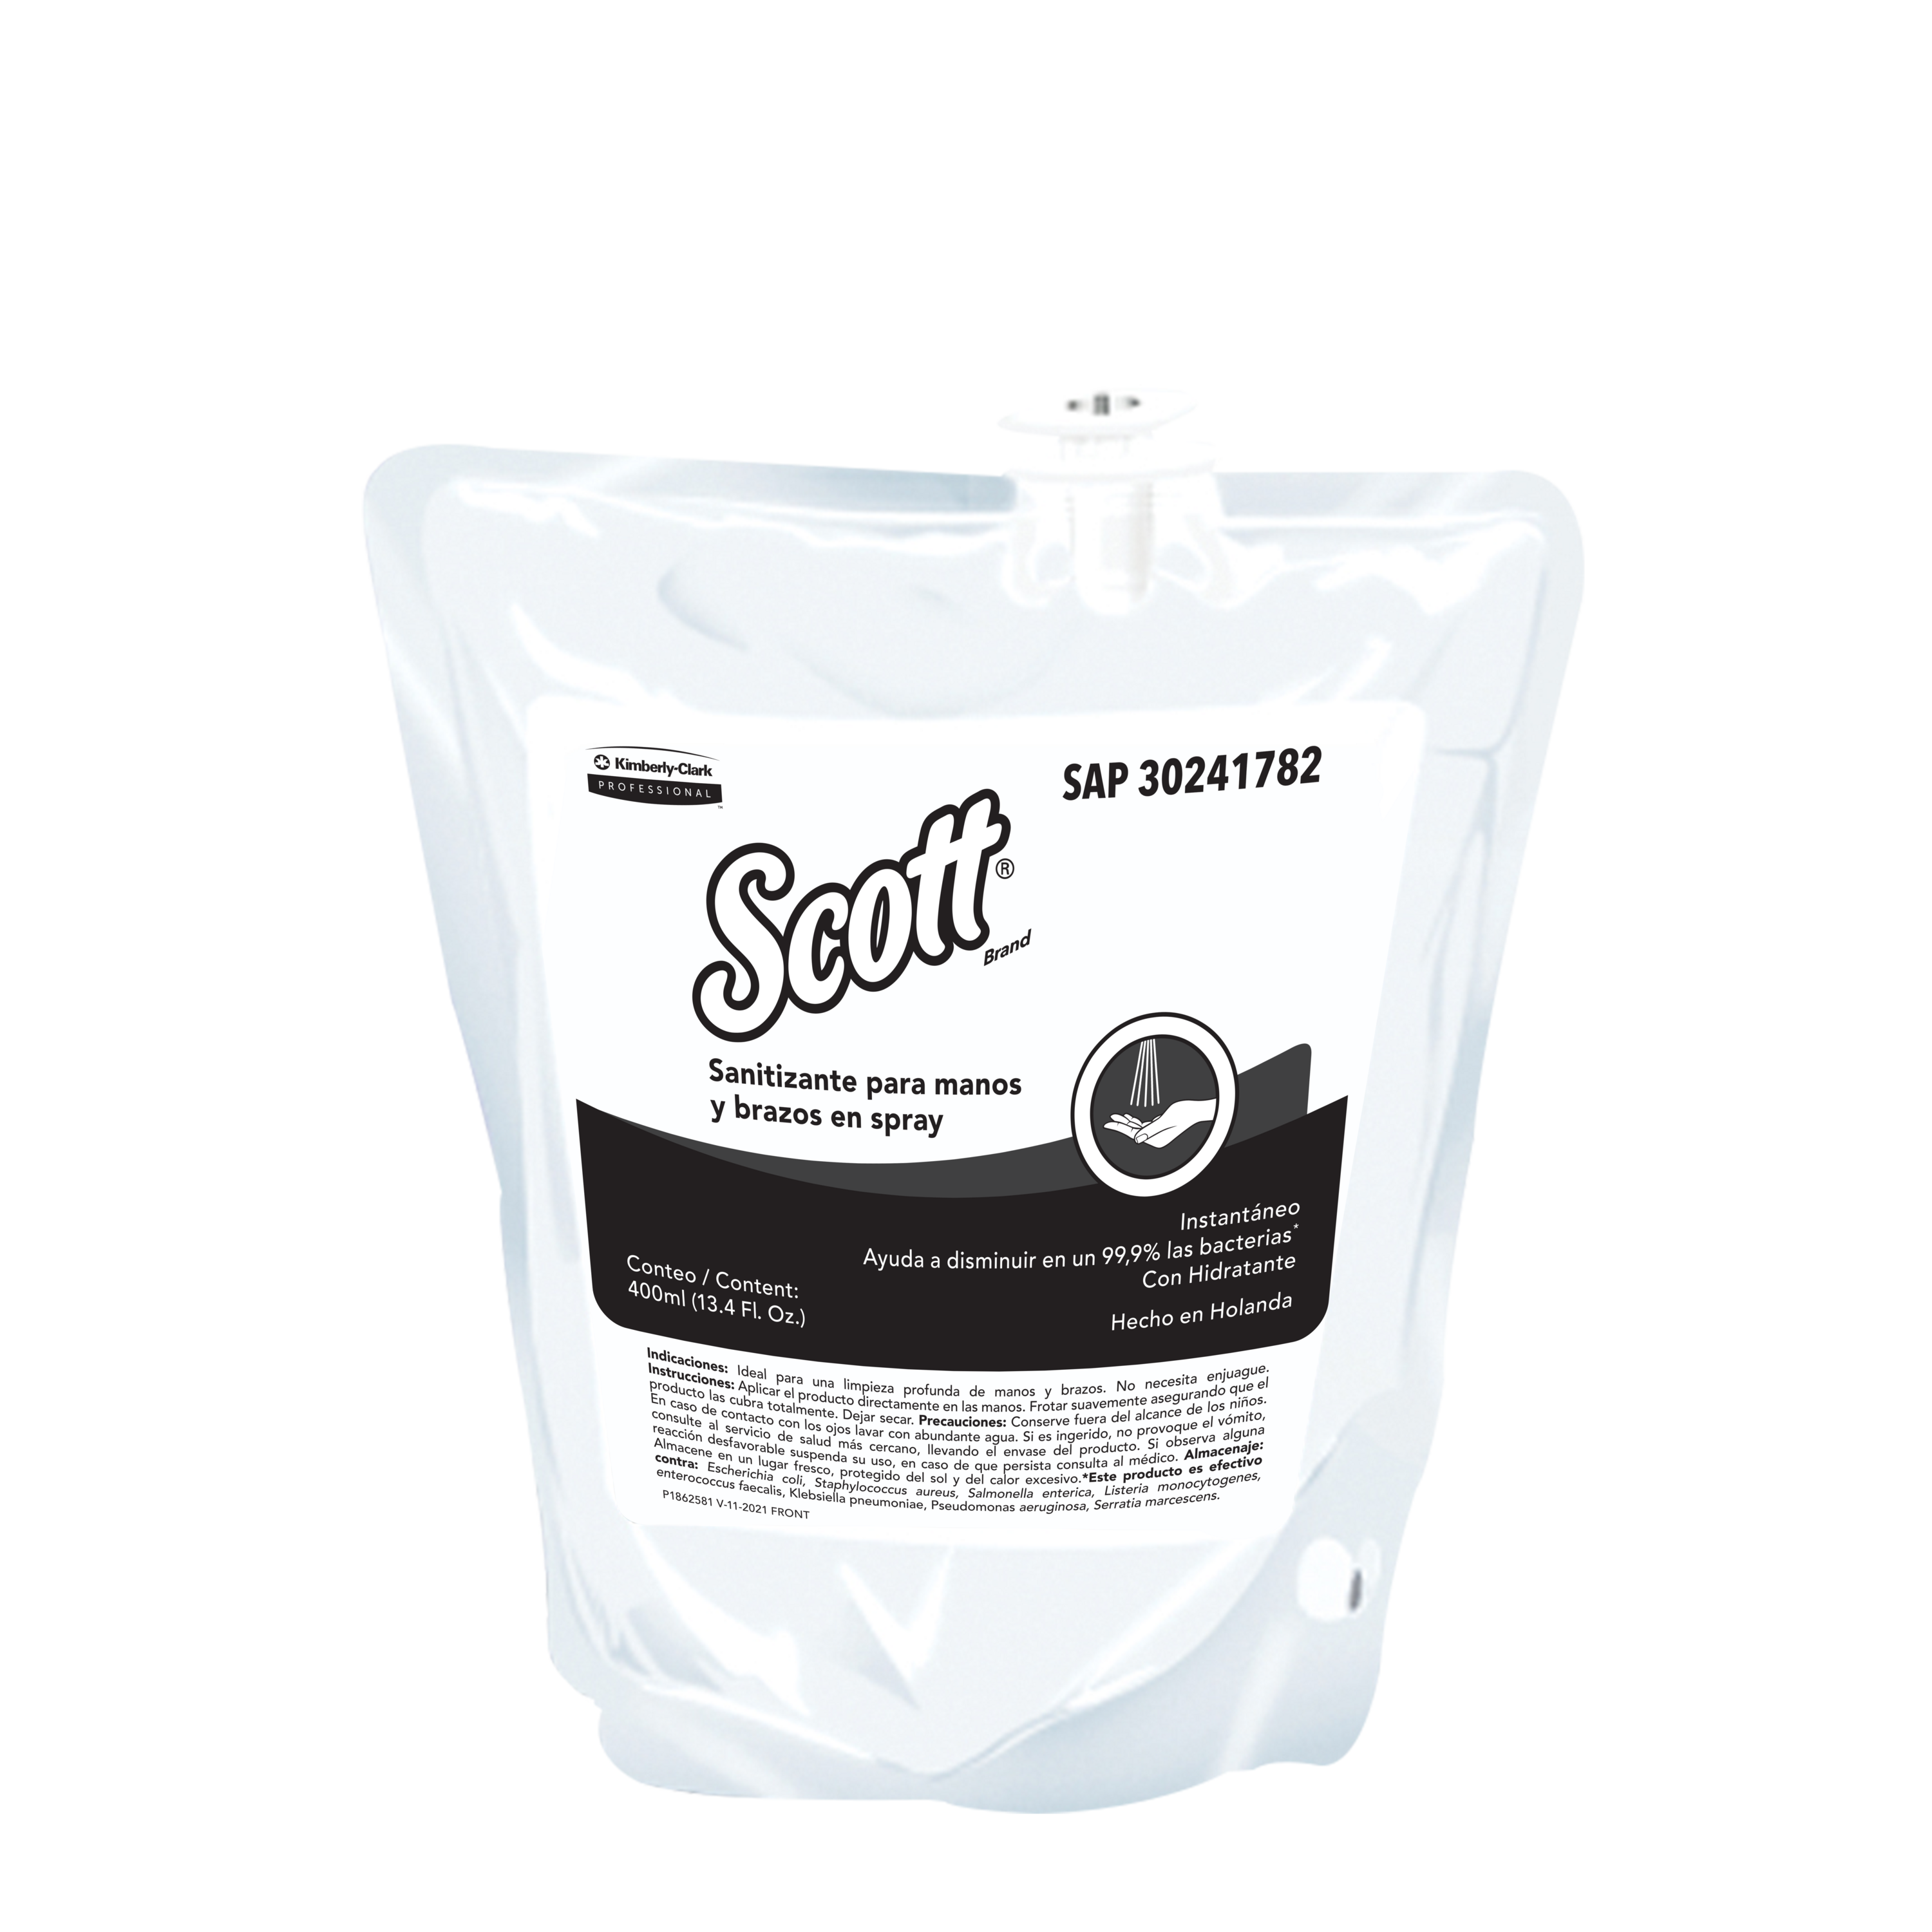 Scott® Essential - Sanitizante para manos y brazos en Spray, 400ml/repuesto, 12 repuestos/caja, 30241782 - S060756640